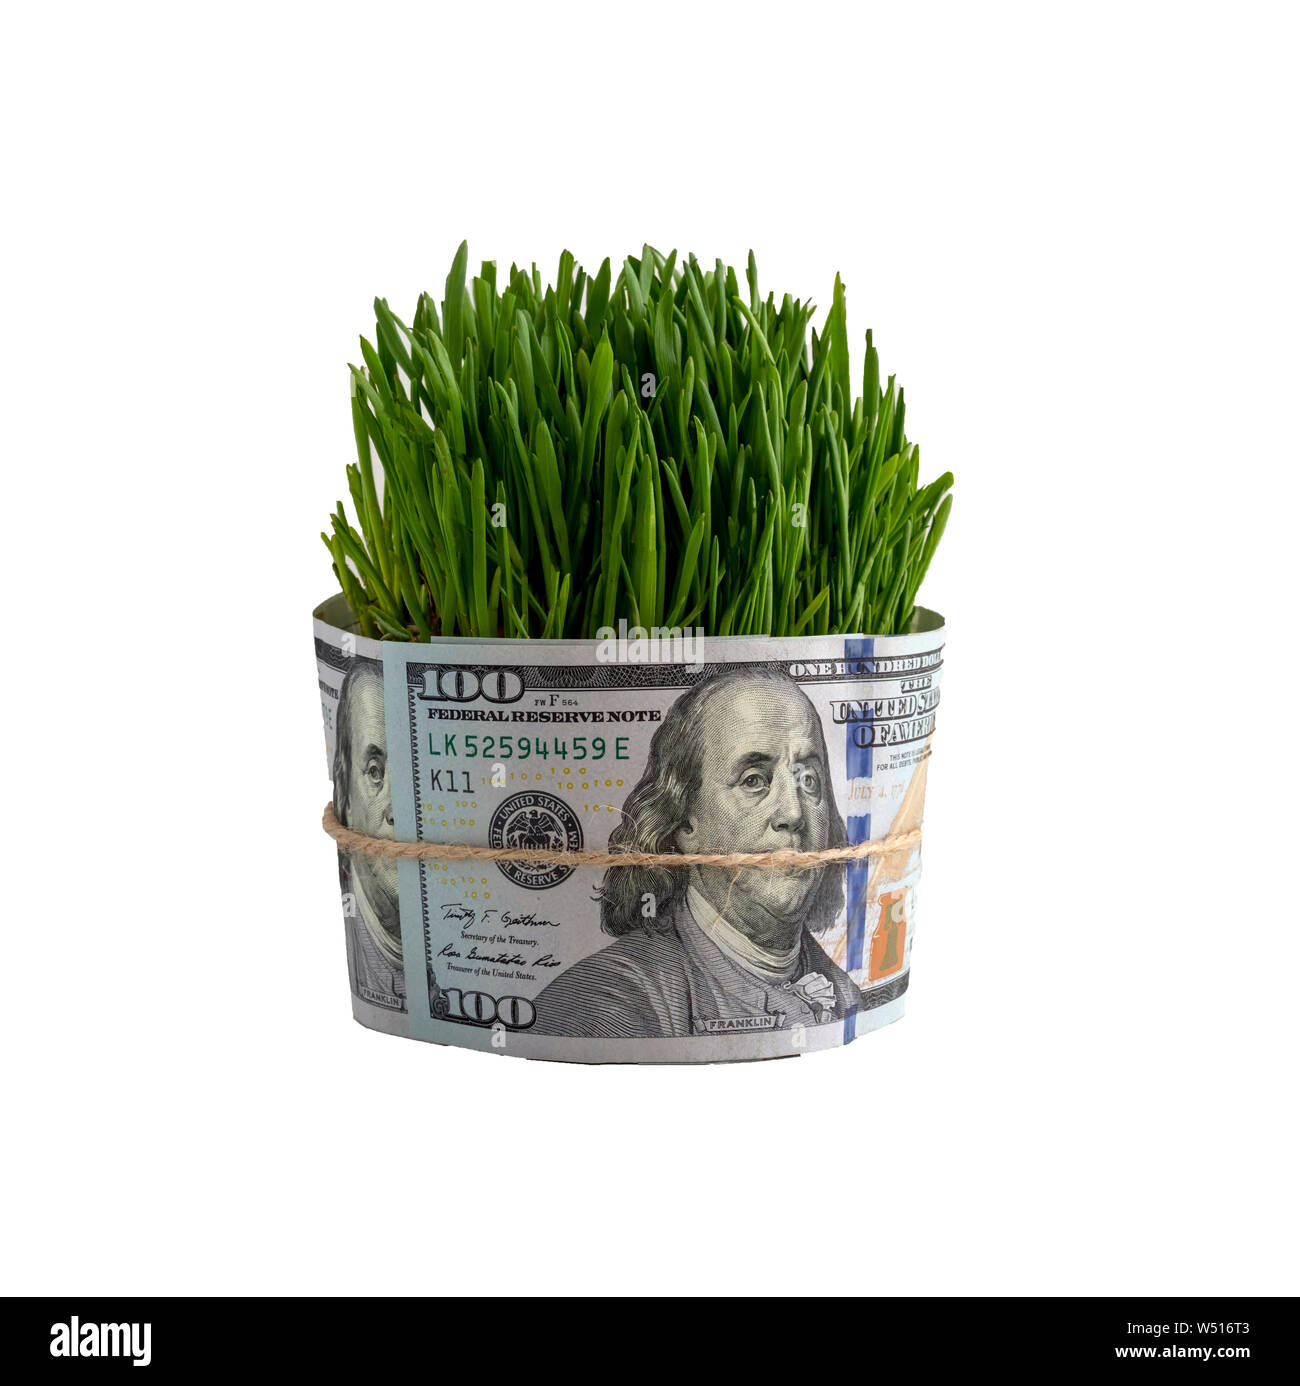 Konzept Gras wachsen aus der US-Dollar mit einer verknoteten Mund Wirtschaft. Die Bedeutung der Ökologie. Stockfoto